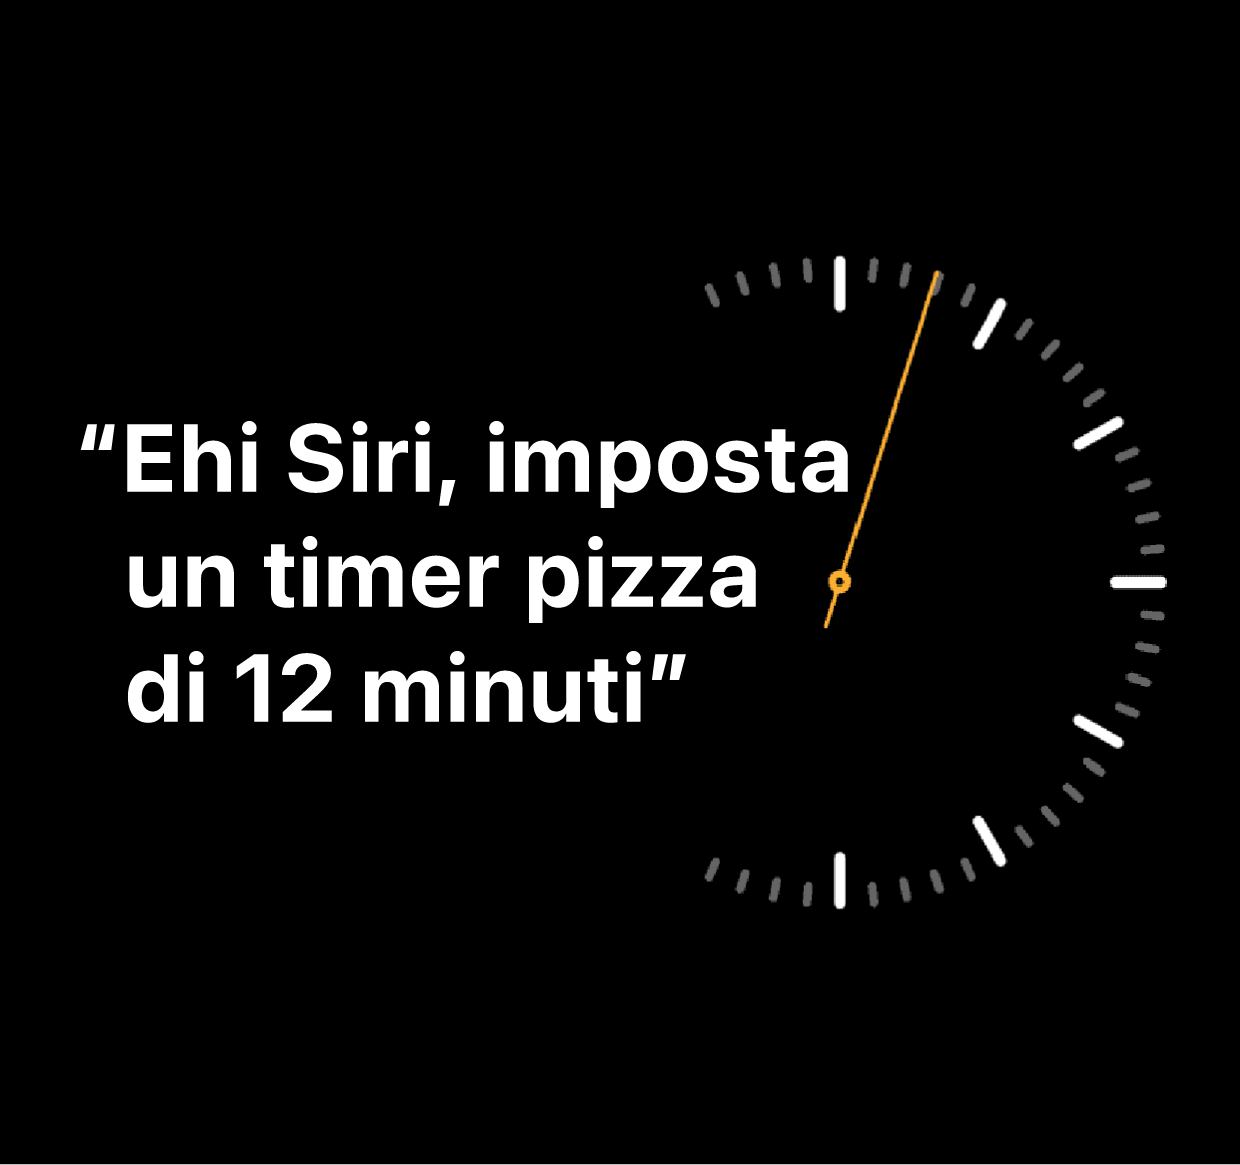 Un'illustrazione delle parole “Ehi Siri, imposta un timer pizza di 12 minuti”.